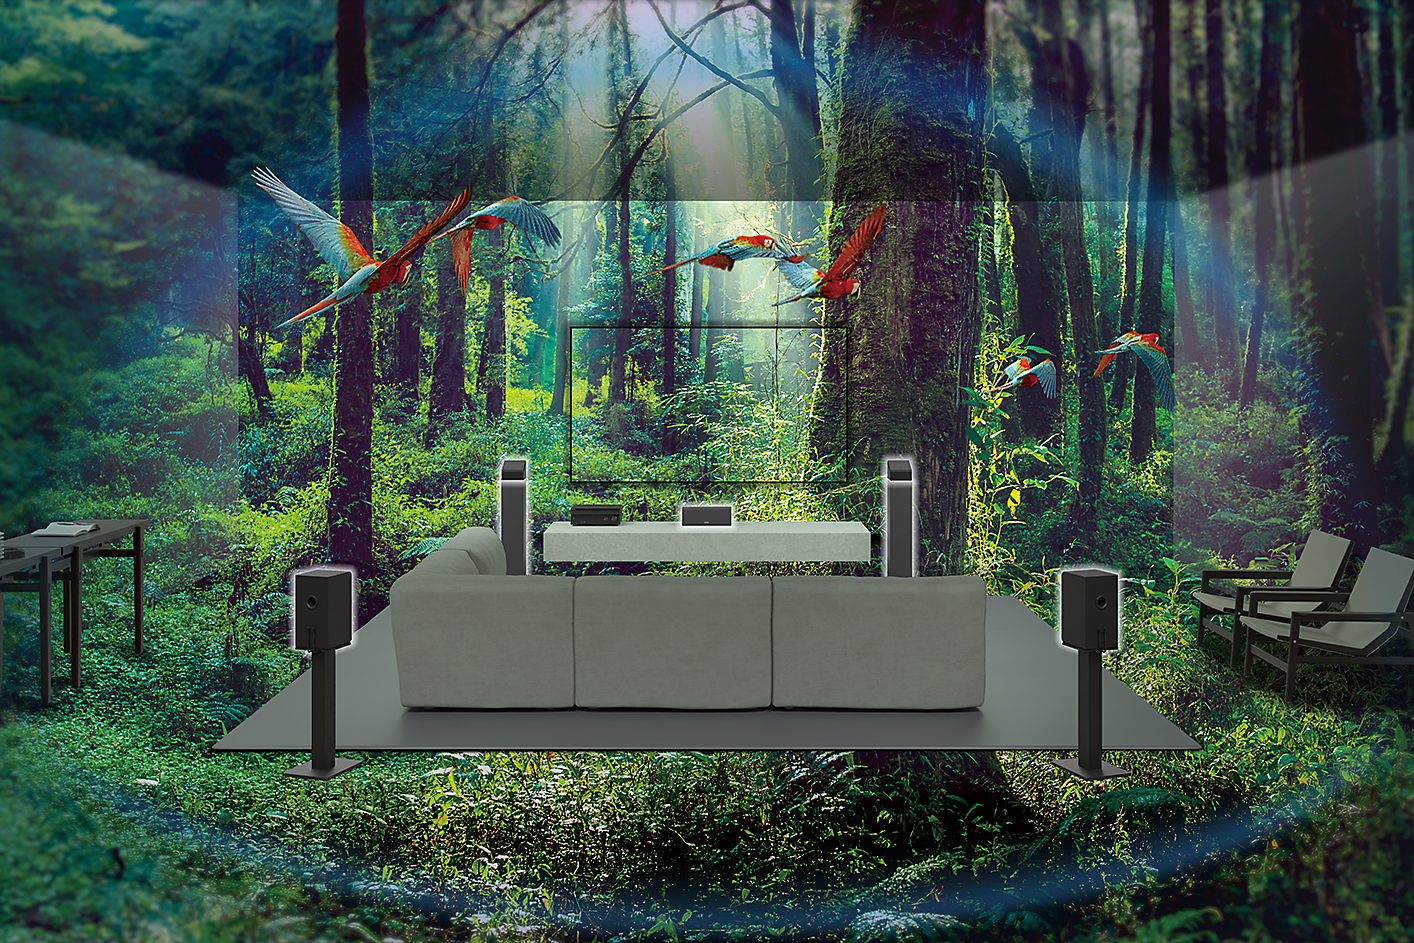 Slika kauča, televizora i zvučnika usred šume, oko njih lete papige